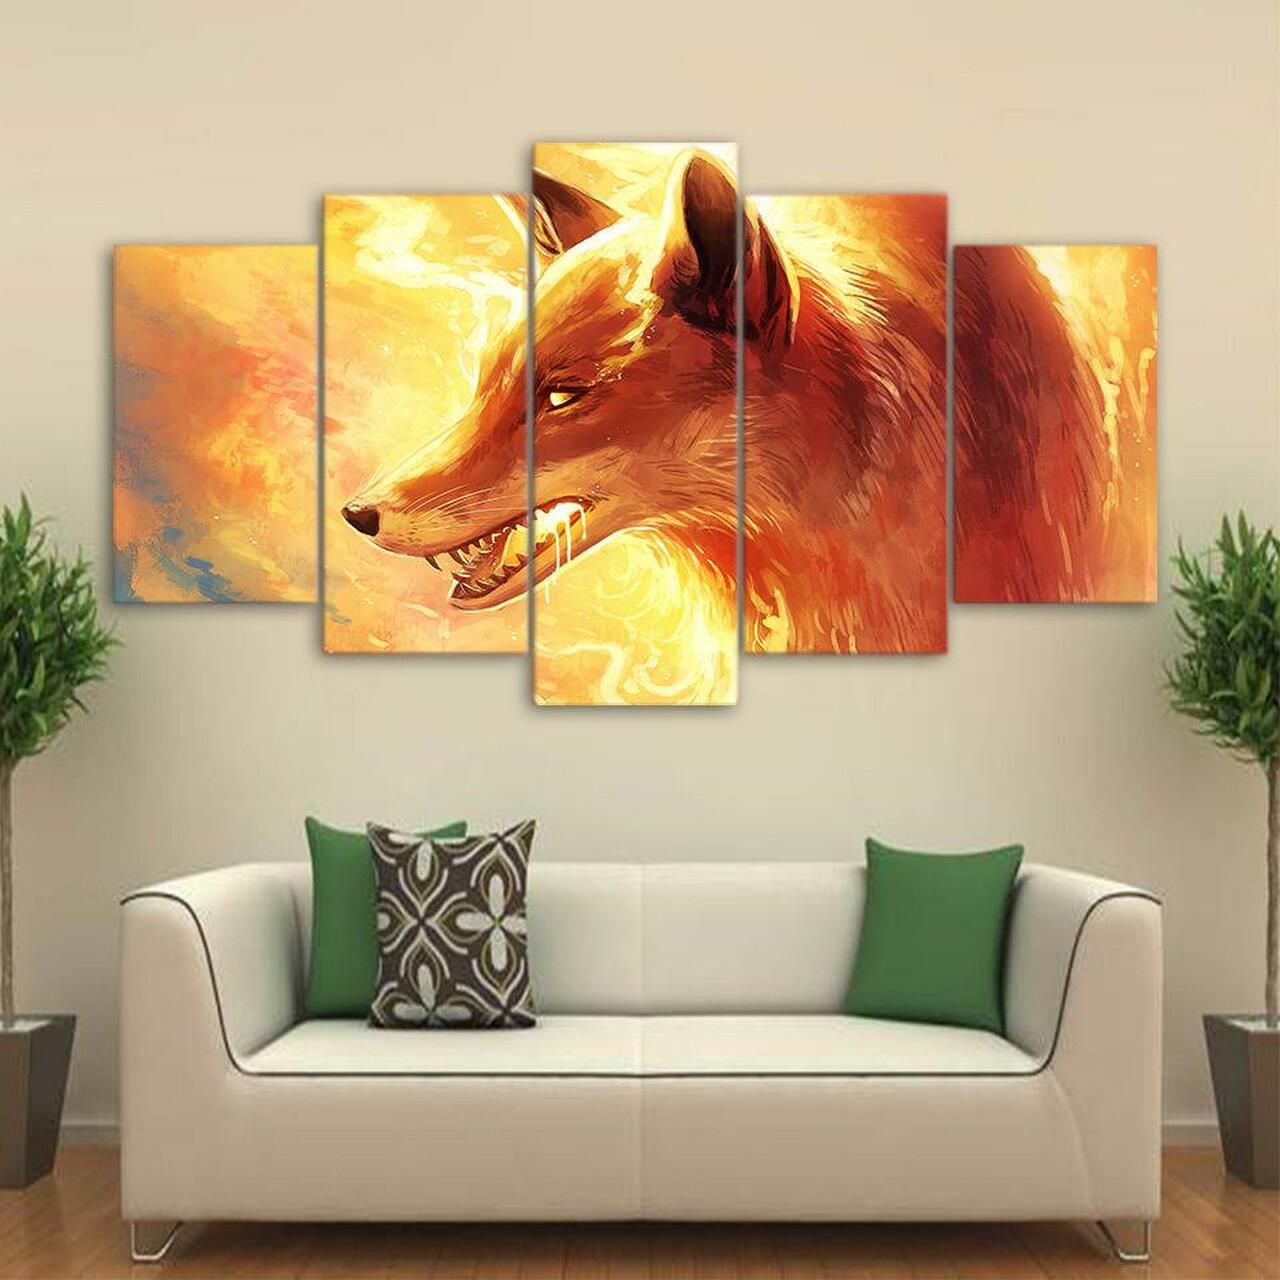 fire fox 5 pices peinture sur toile impression sur toile toile art pour la dcoration intrieurejneju